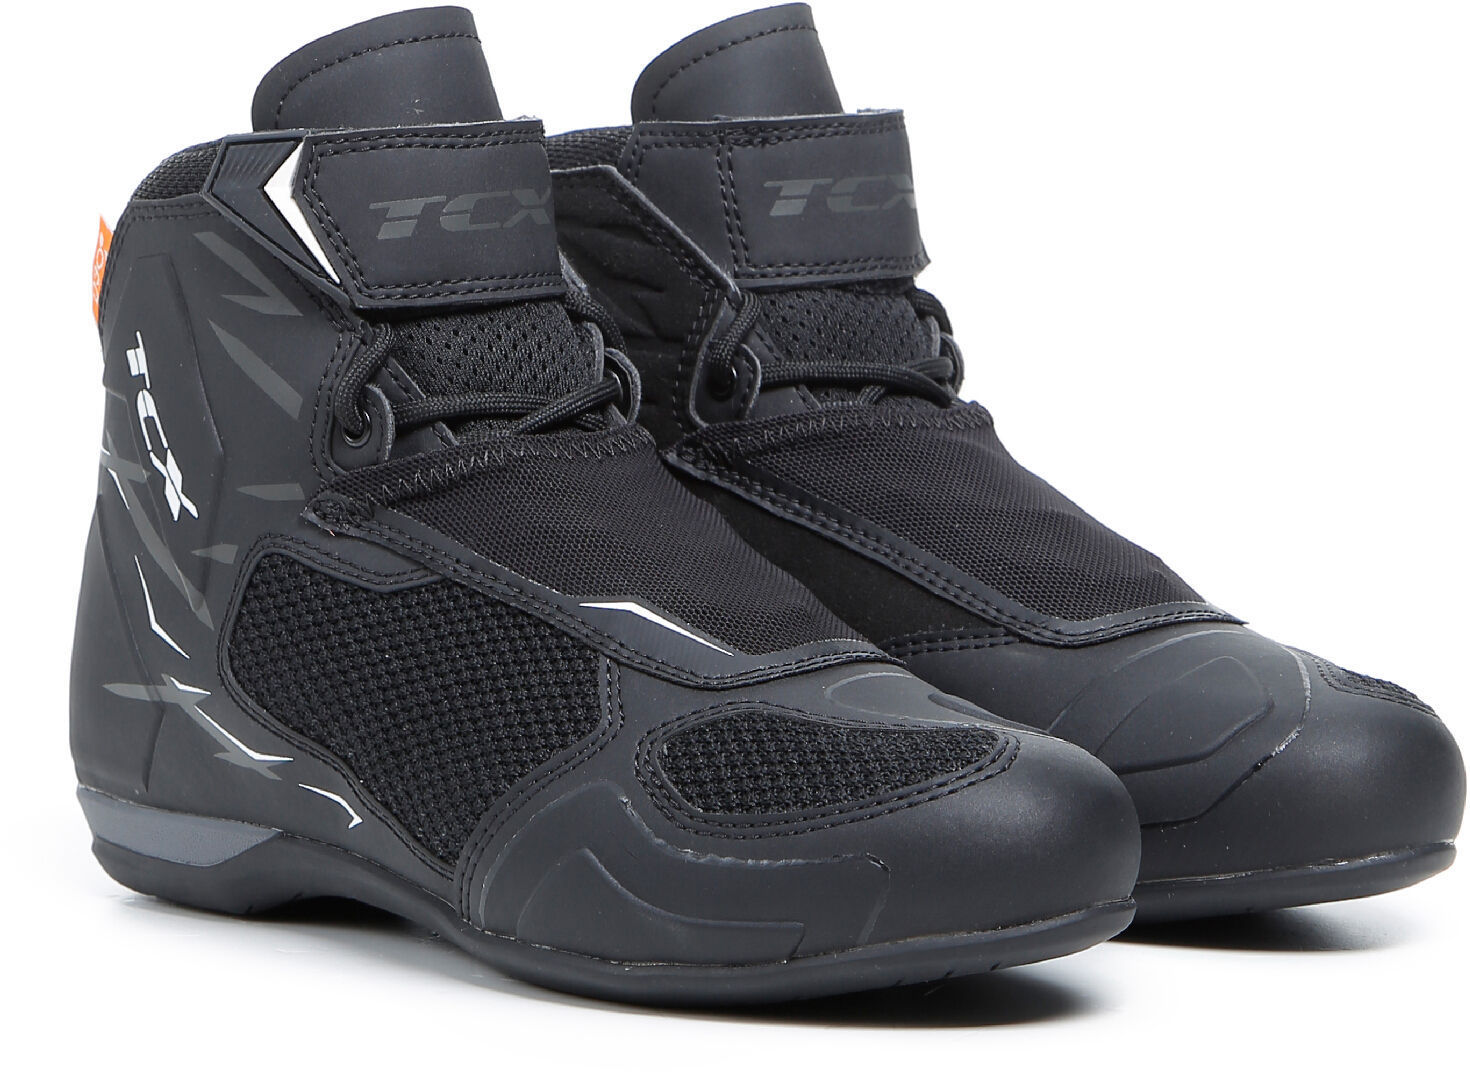 TCX RO4D Air Zapatos de motocicleta para damas - Negro Blanco (38)